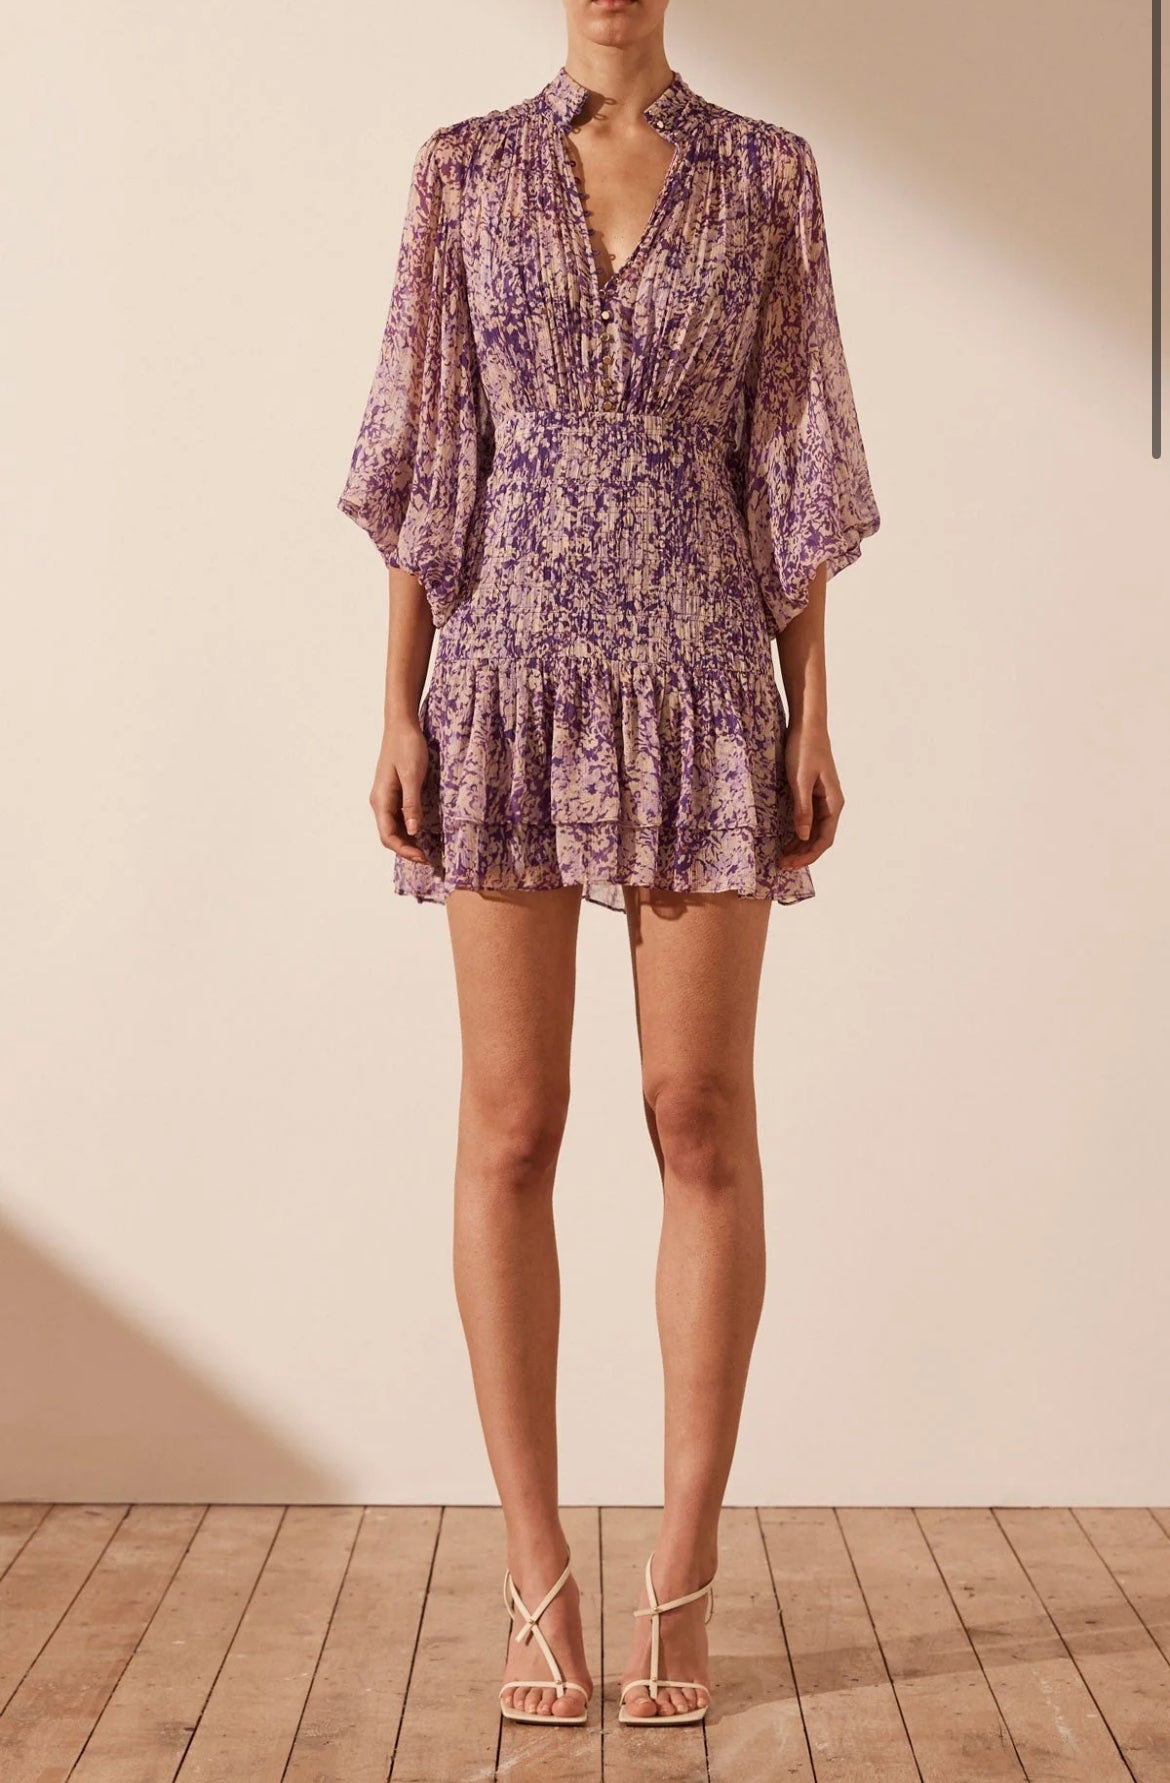 Shona Joy - Aurier Button Up Ruched Mini Dress - Size 6